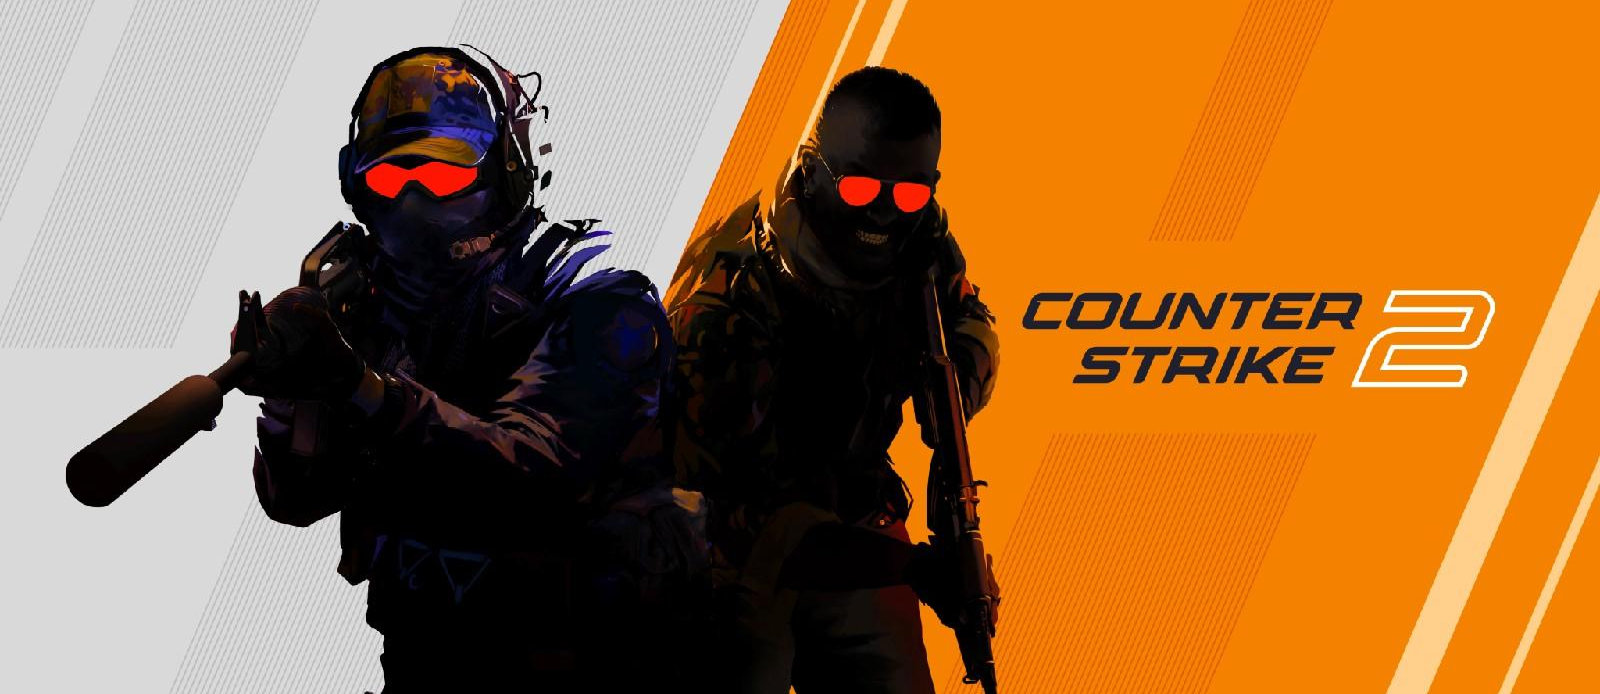 Counter Strike 2 Chính Thức Ra Mắt - Và Đây Là Cấu Hình Mà Bạn Có Thể Chơi Mượt Mà Tựa Game Này